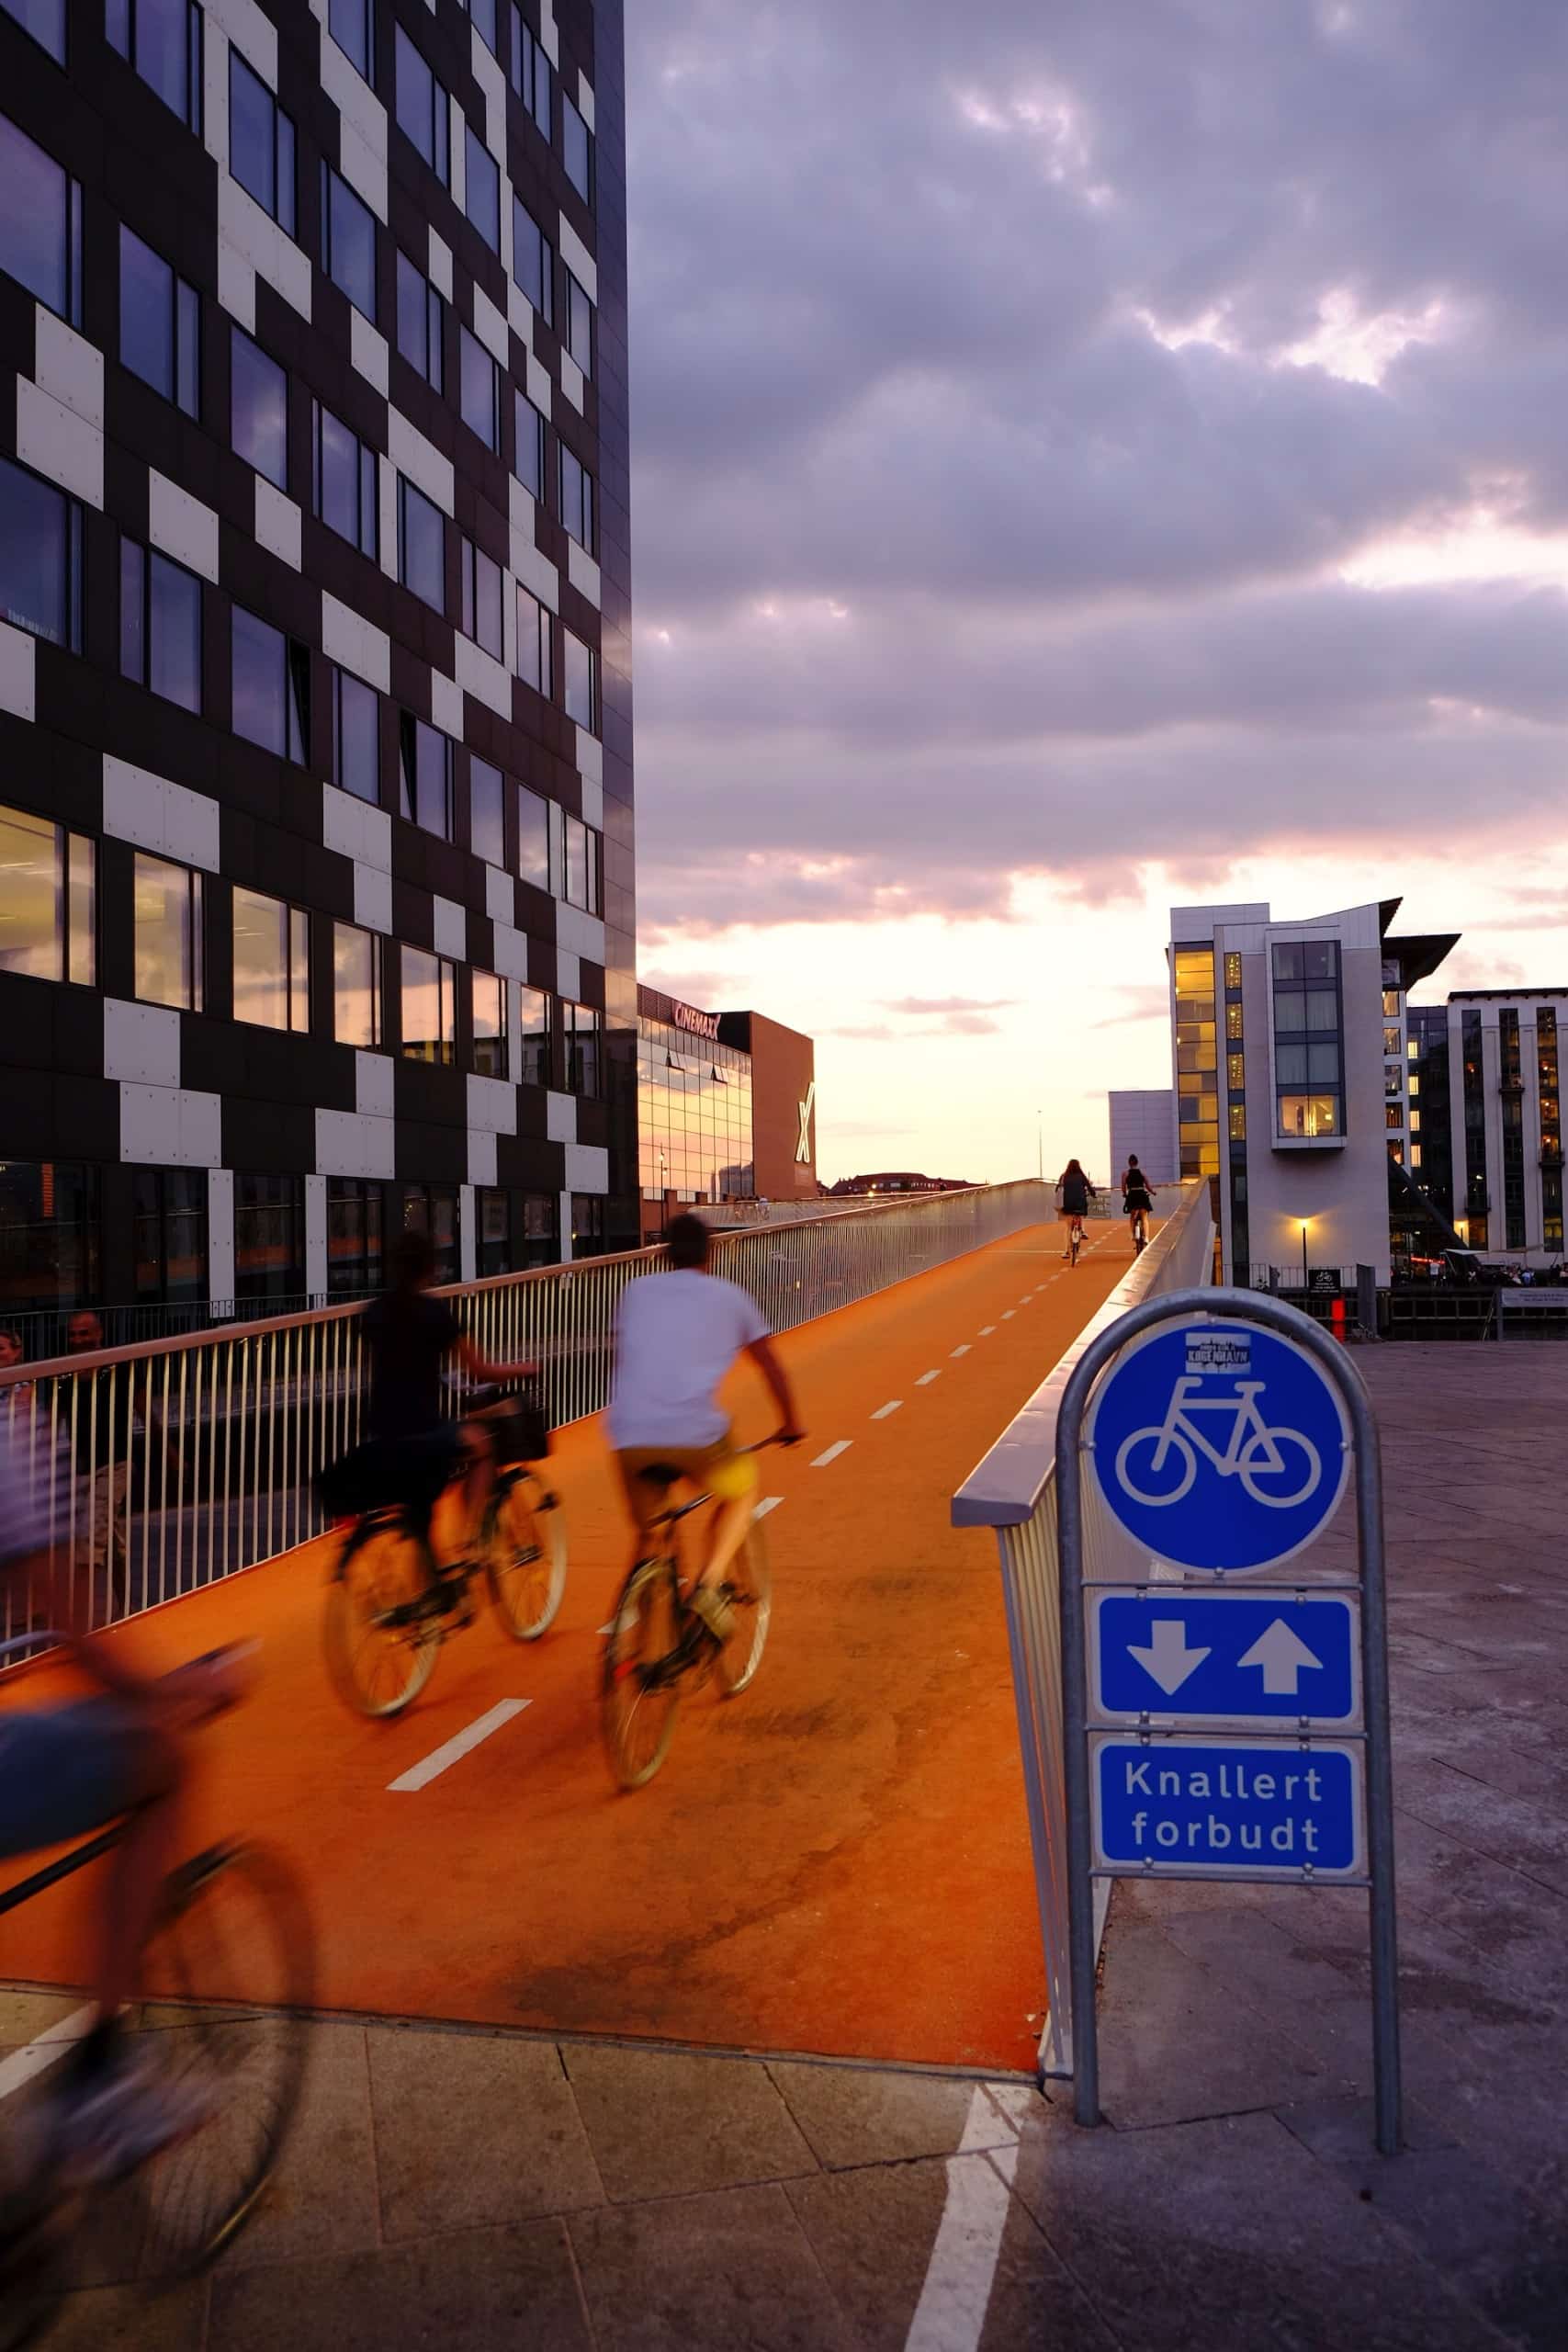 Fahrräder sind ein wichtiges Verkehrsmittel in Dänemarks Hauptstadt Kopenhagen, wo bereits früh in die Fahrradinfrastruktur investiert wurde. Bekannt ist etwa auch die Cykelslangen des Büros Dissing+Weitiling, eine Brücke über das Hafenbecken nur für Radfahrer*innen. Foto: Steinar Engeland via Unsplash